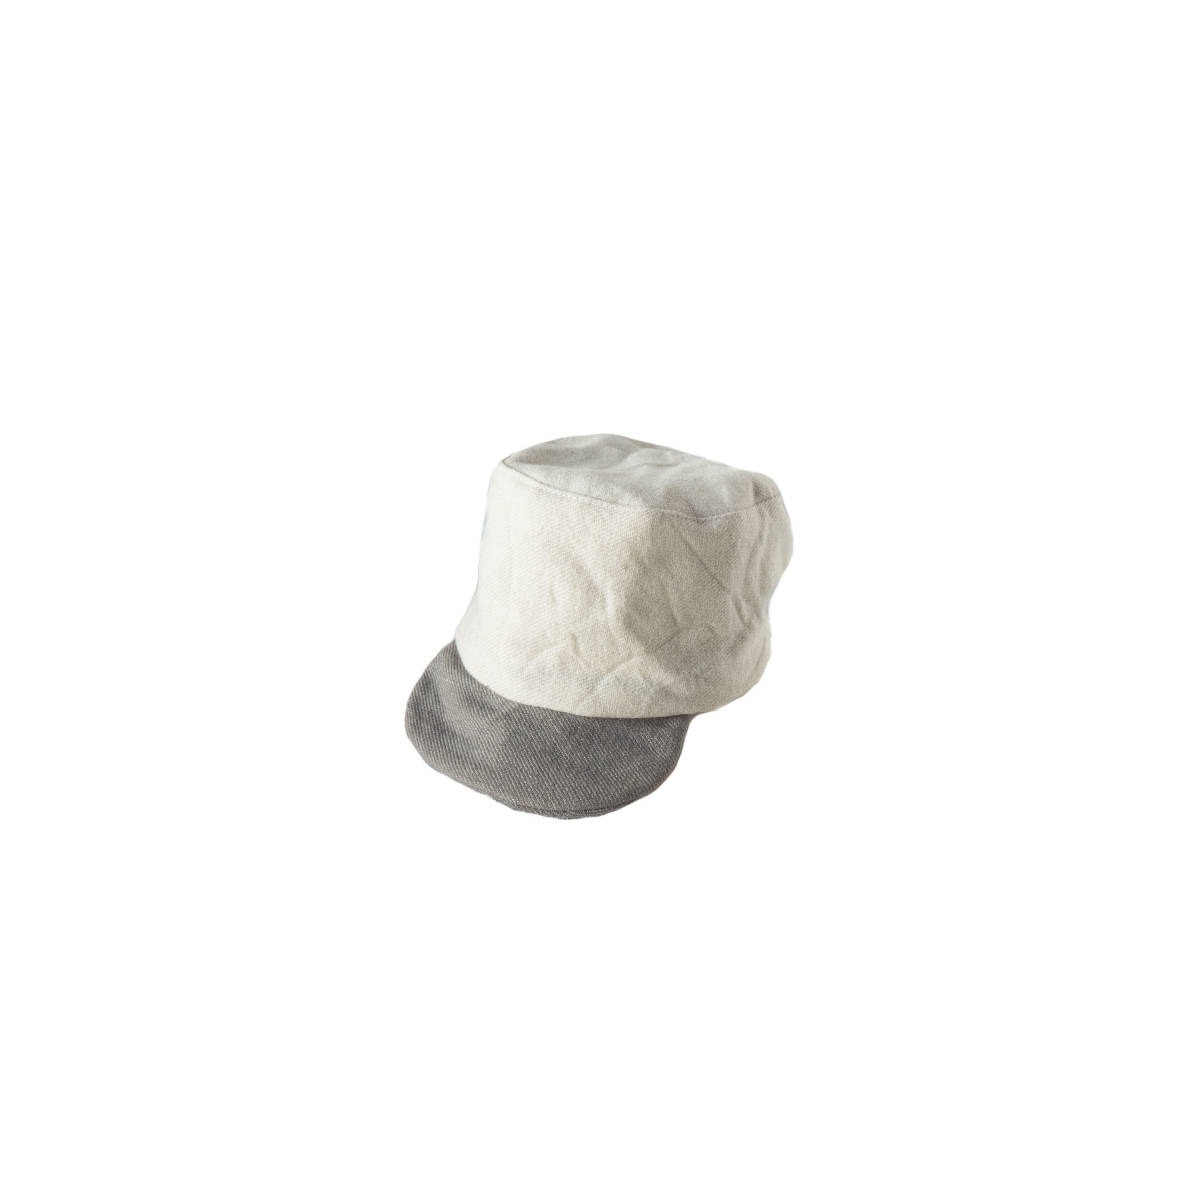 【公式】 ホワイト、グレー草木染め、デッドストックウール子供用キャップ、サイズ調整可能(約1才から9才) MZ original 帽子